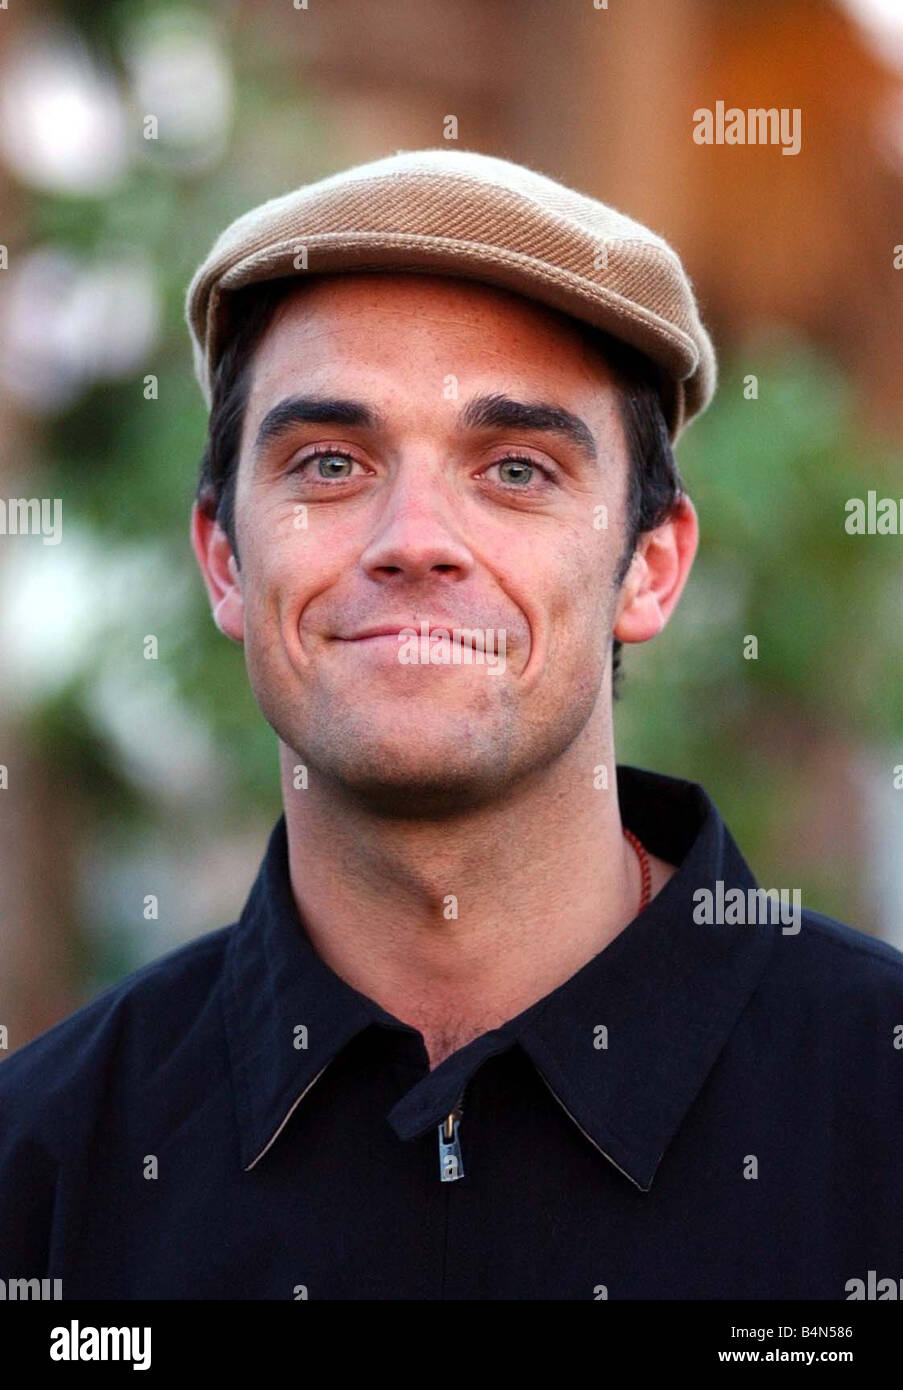 Robbie Williams gemacht April 2002 im Bild beim Coachella Musik Festival in Palm Springs California Robbie Williams eine Überraschung Aussehen nicht auf der Bühne Kappe Hut Stockfoto